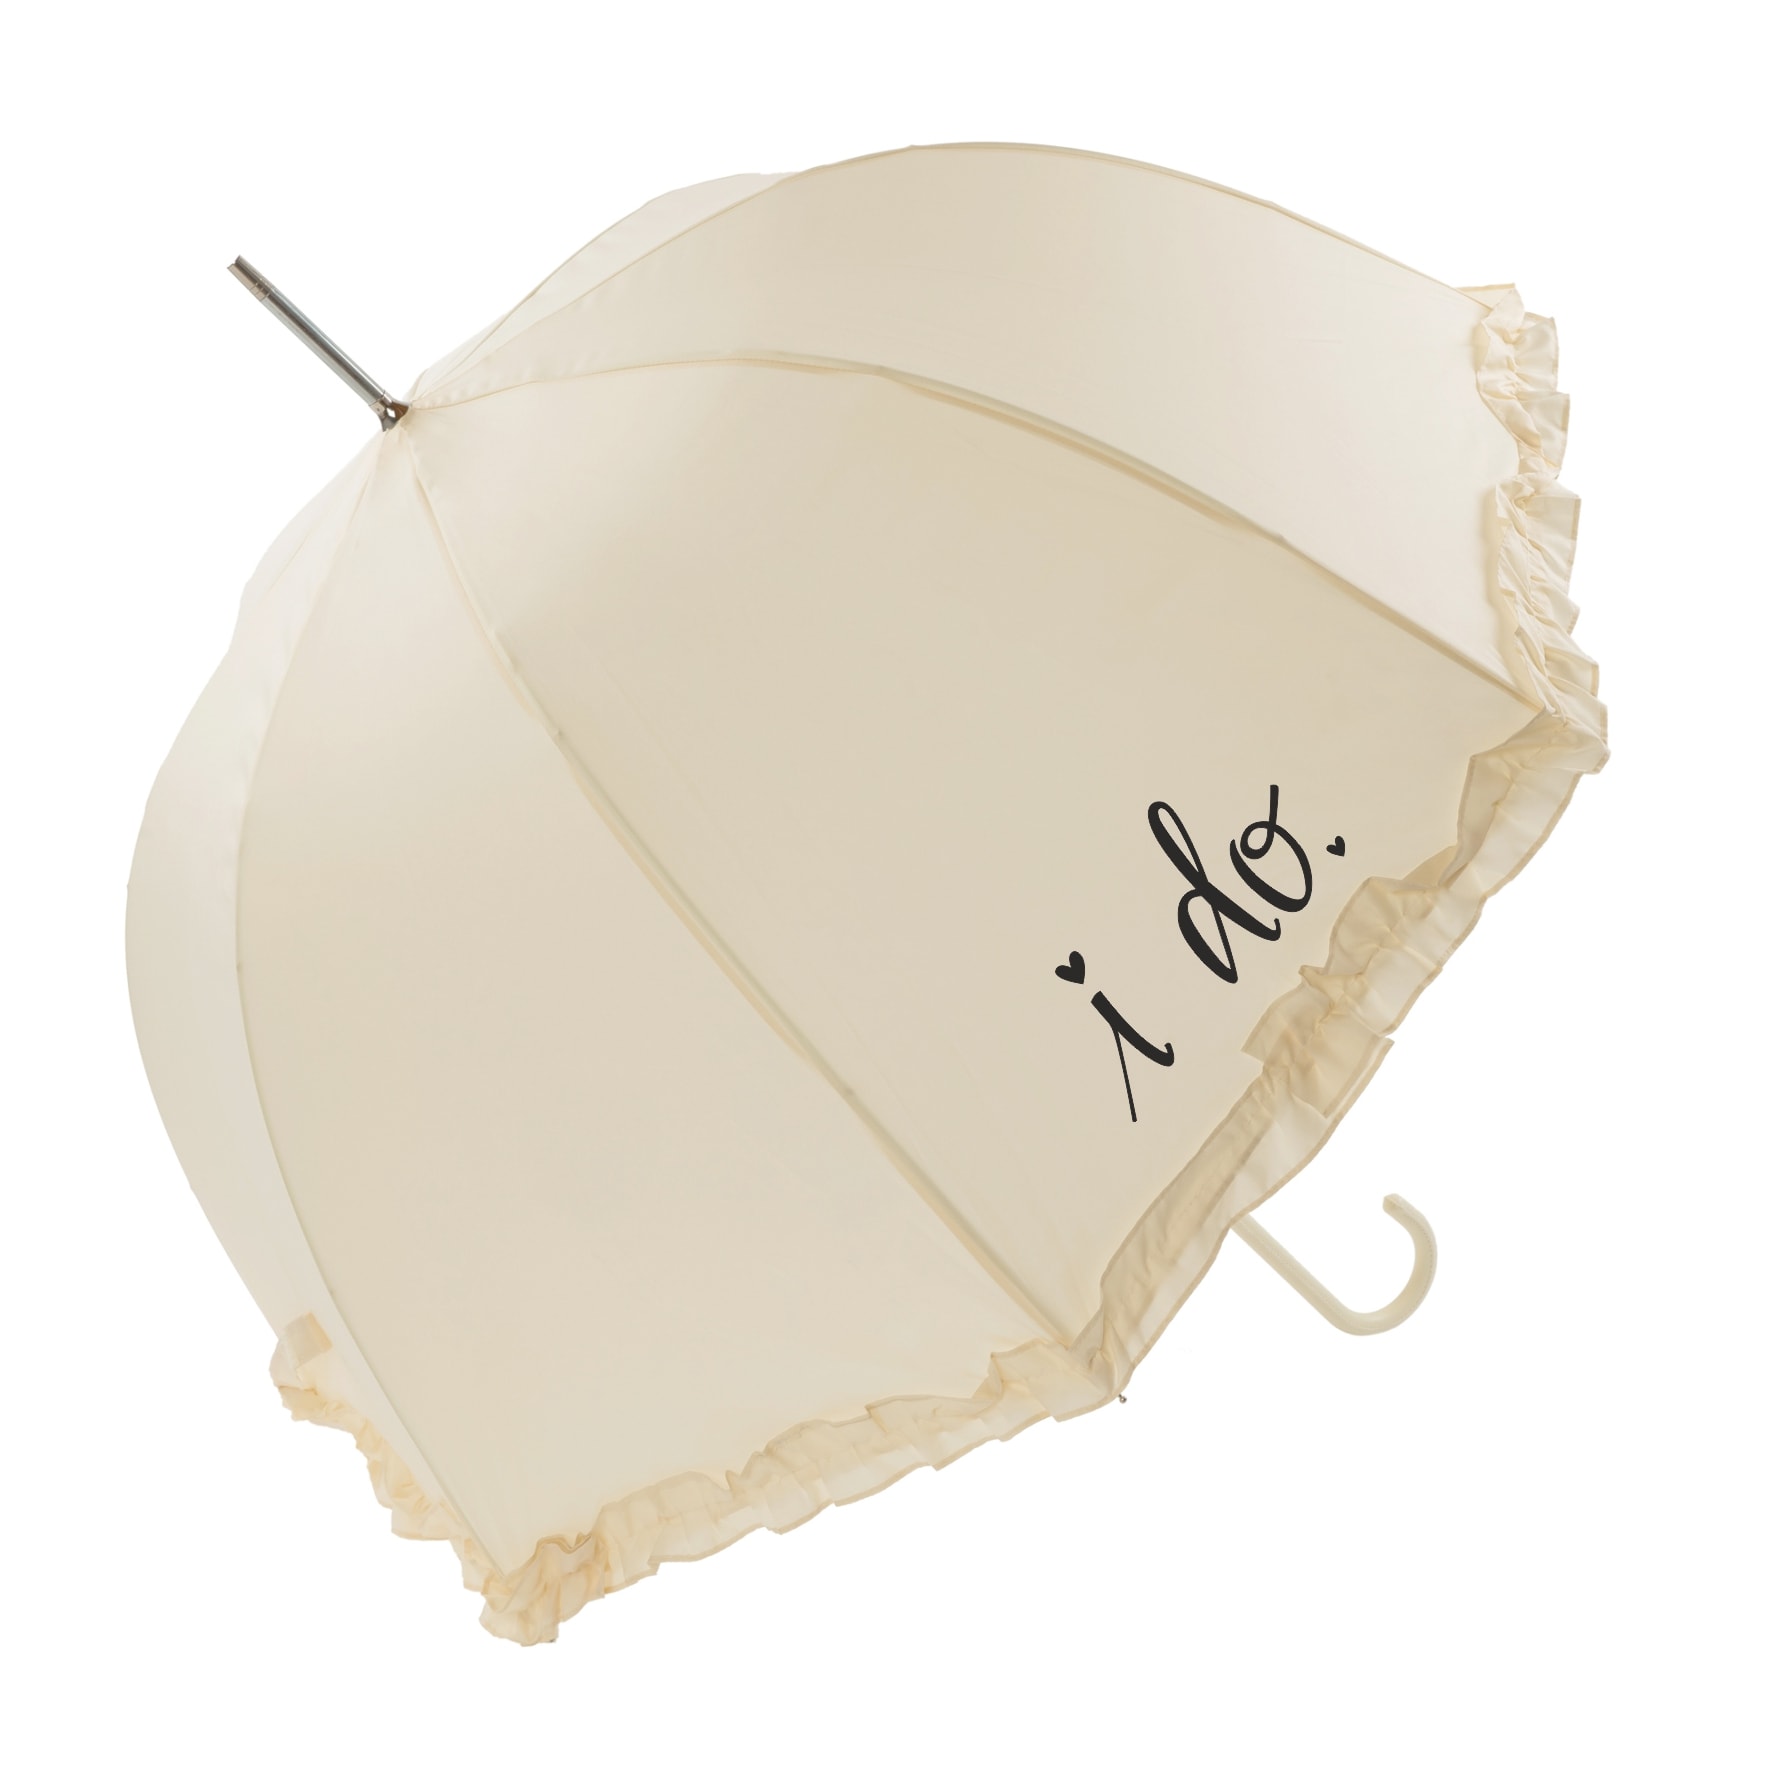 Luxury Frilled "I Do" Wedding Umbrella (17013/IVO)